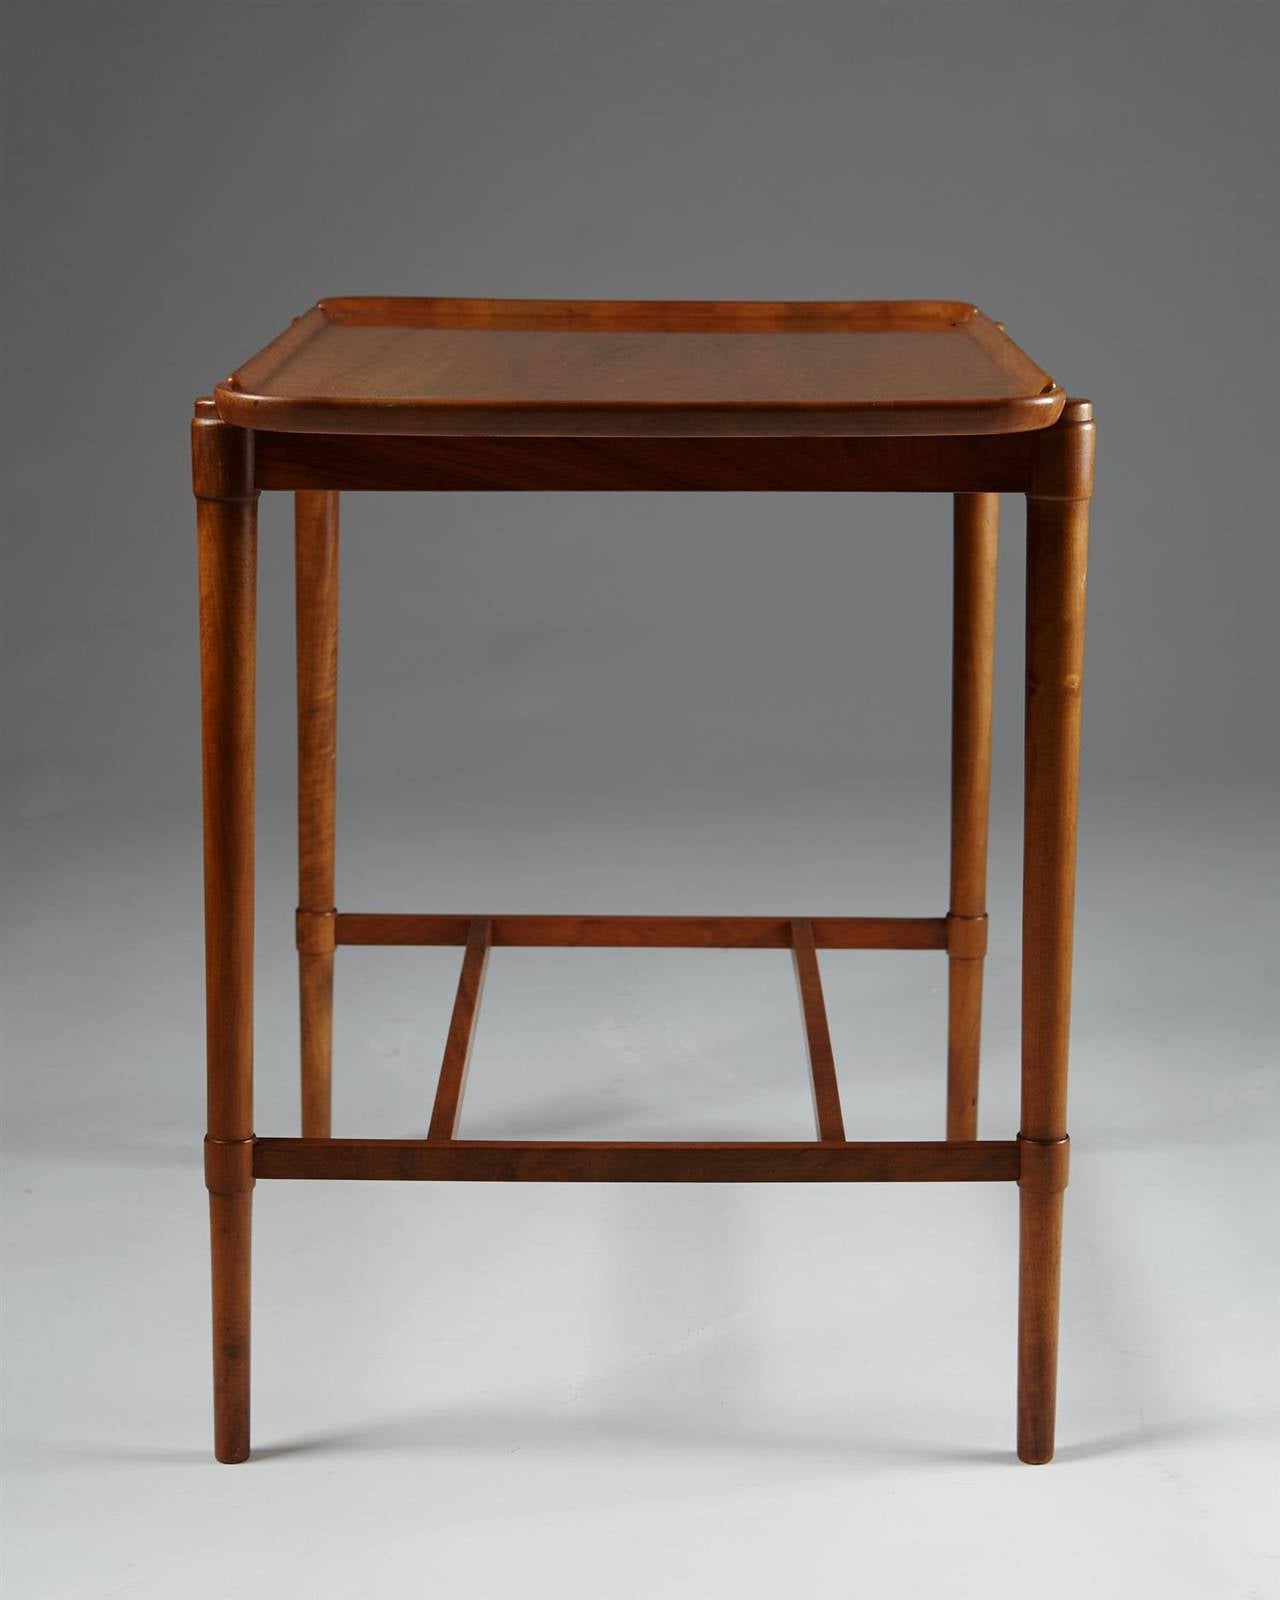 Scandinavian Modern Occasional Table Designed by Peder Hvidt for Fritz Hansen, Denmark, 1943